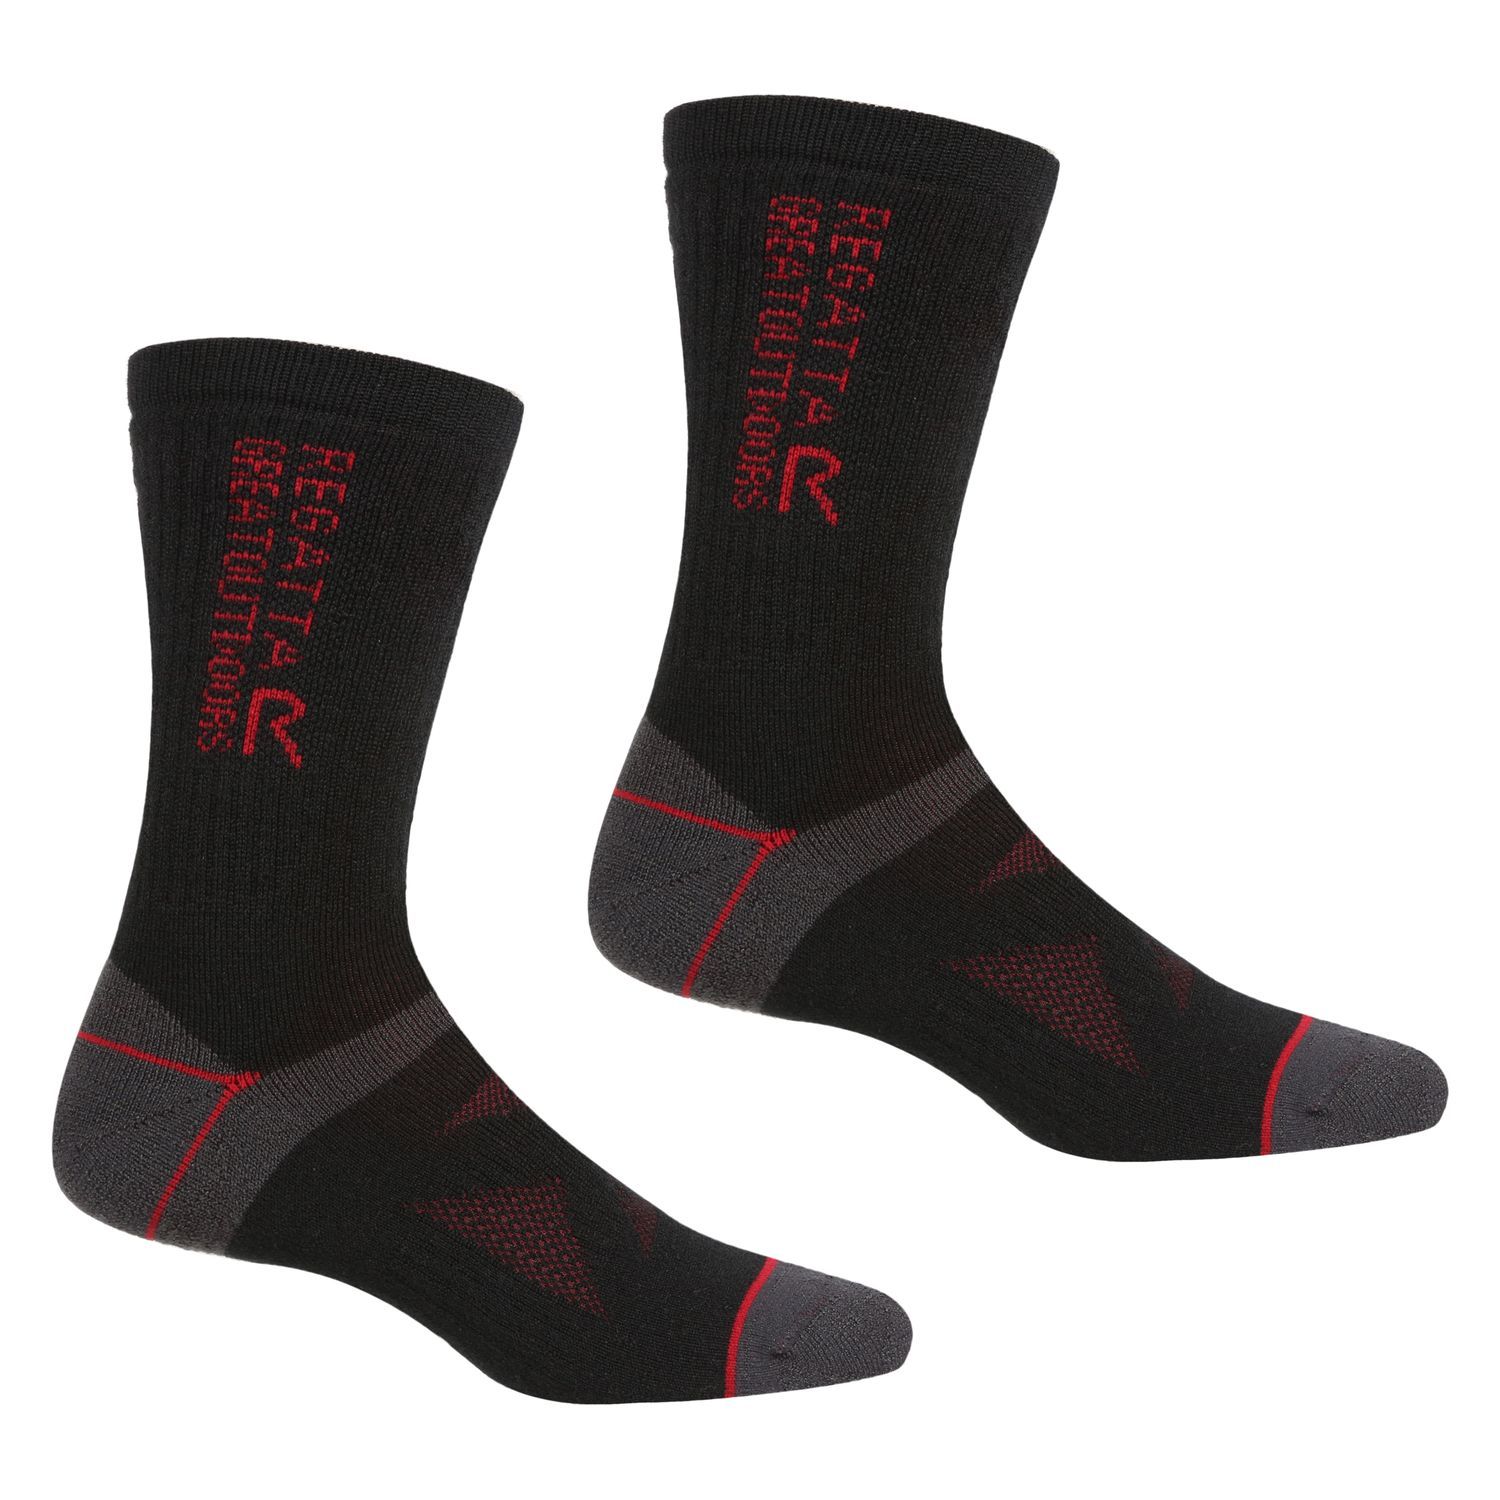 Regatta 2 Pair Wool Hiker Socks (Black/Dark Red)